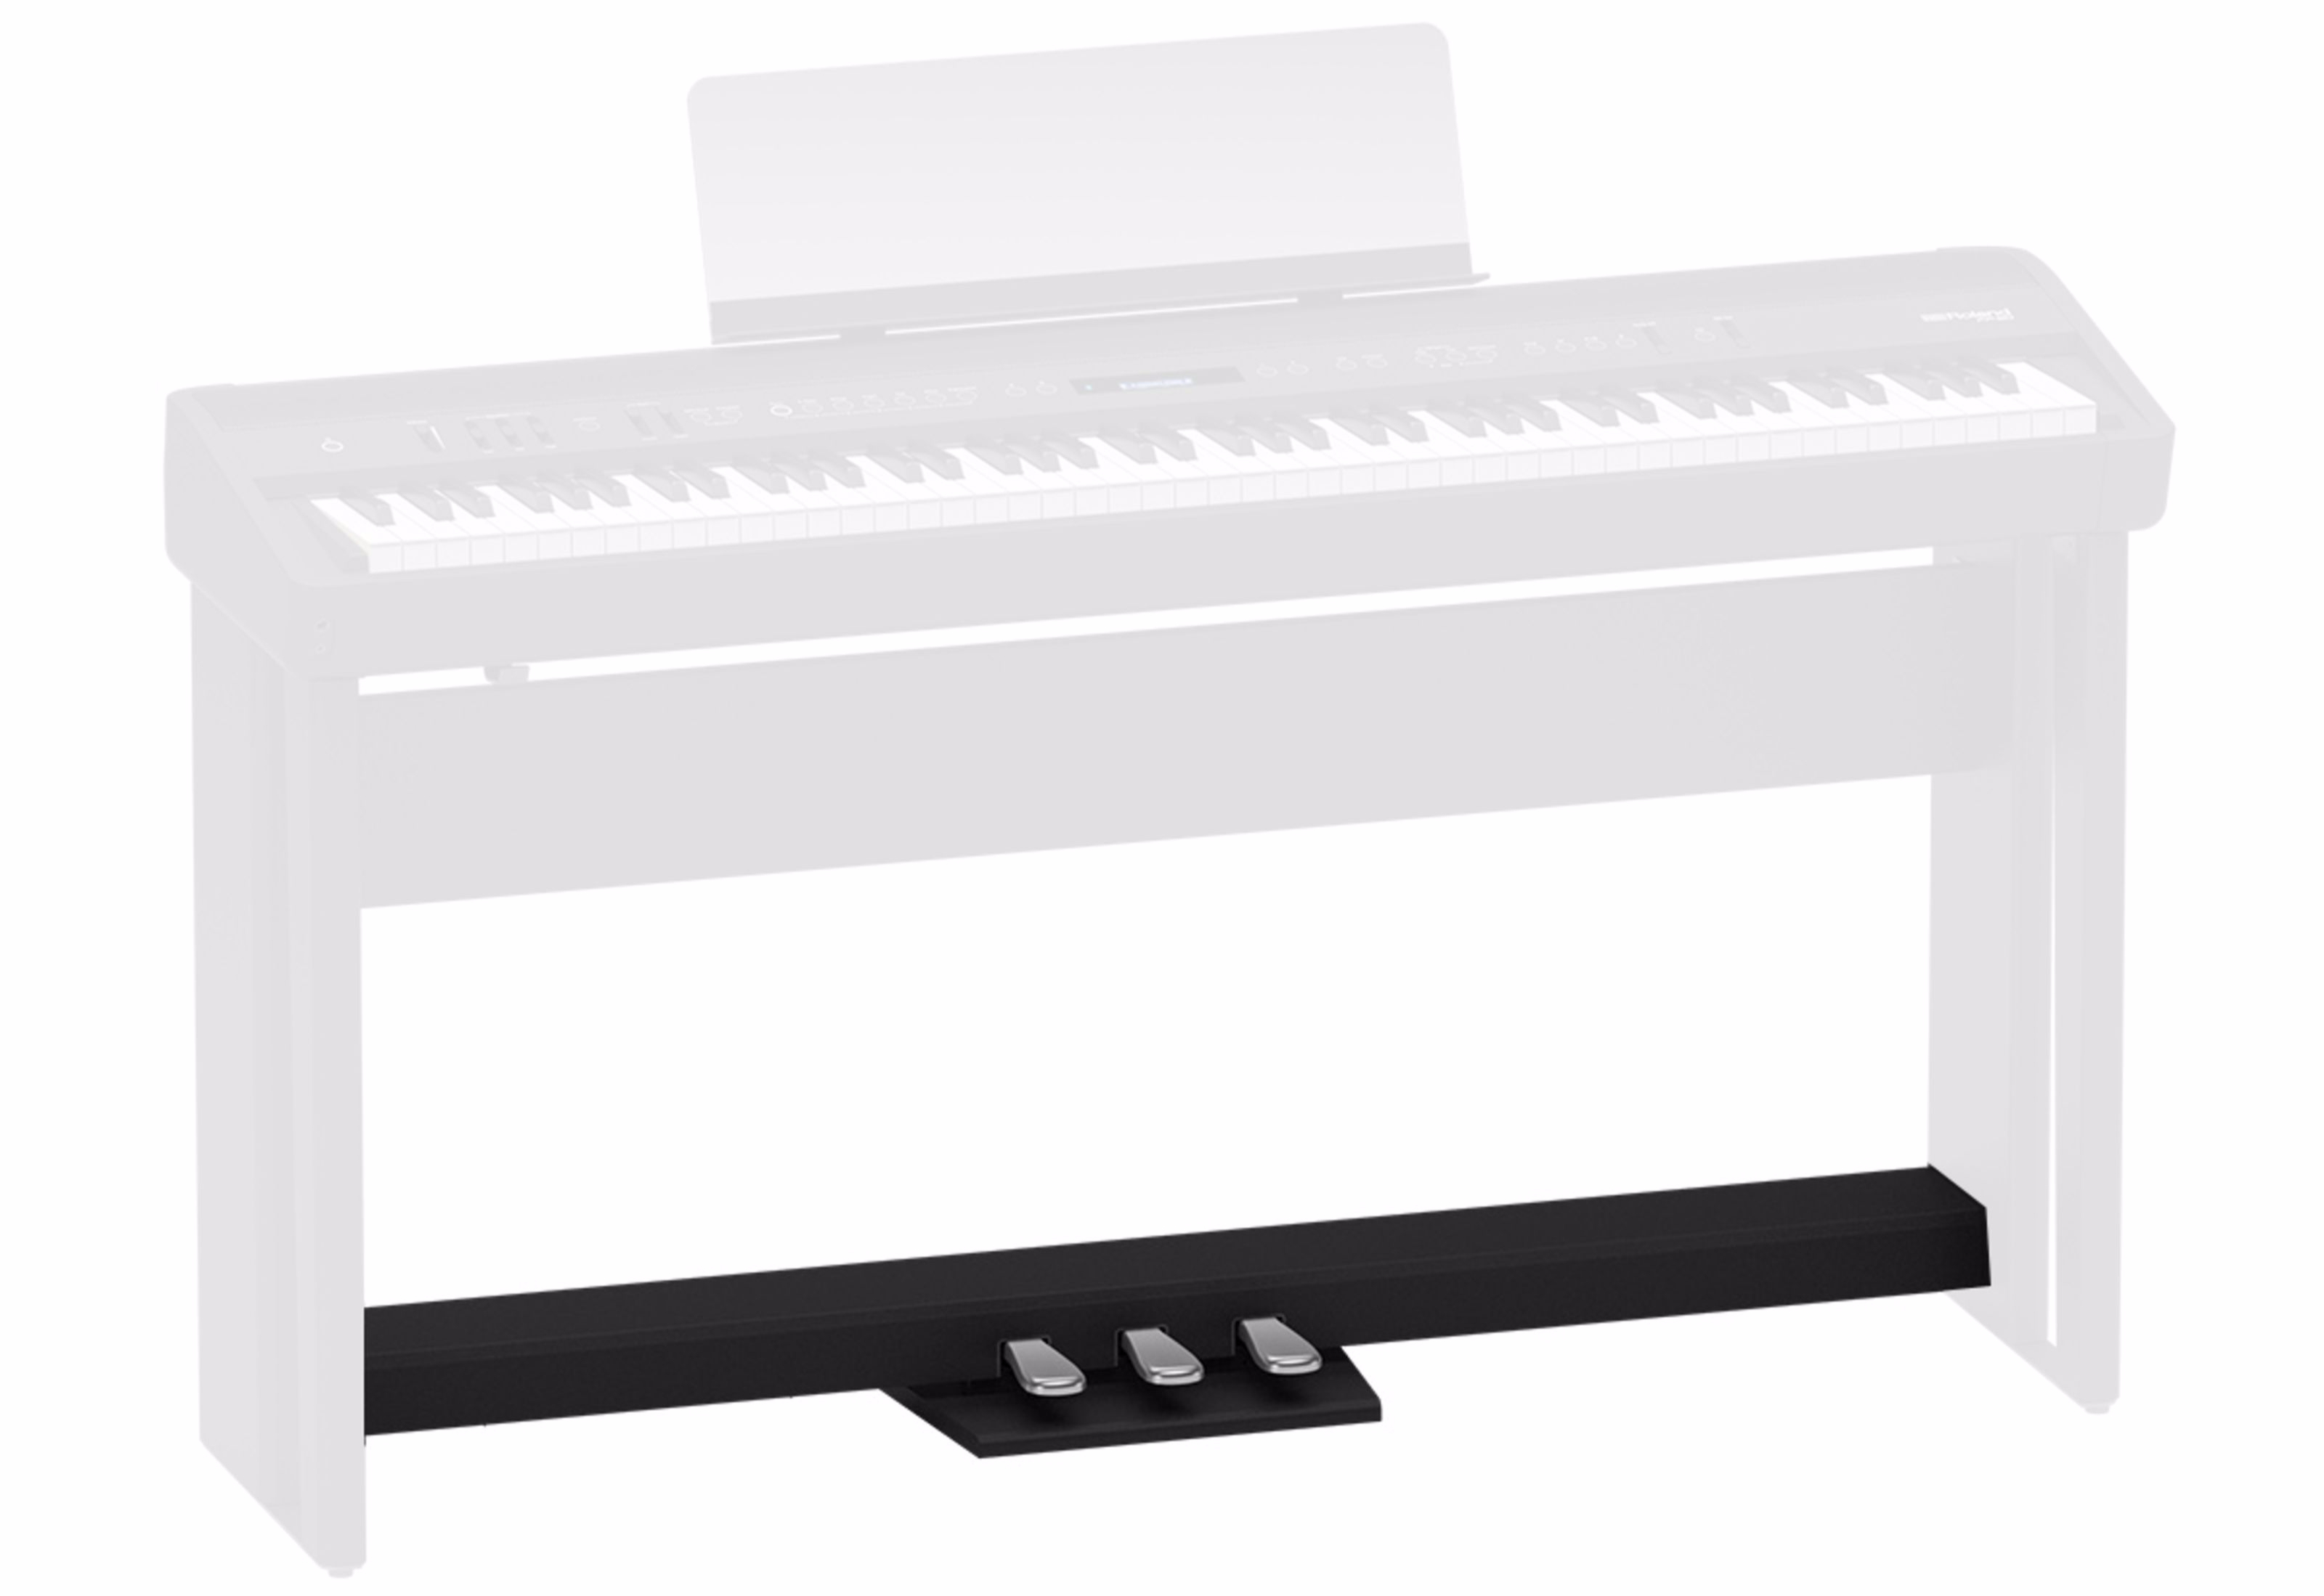 Roland KSCFP10 BK Pied Pour piano Roland FP-10 BK